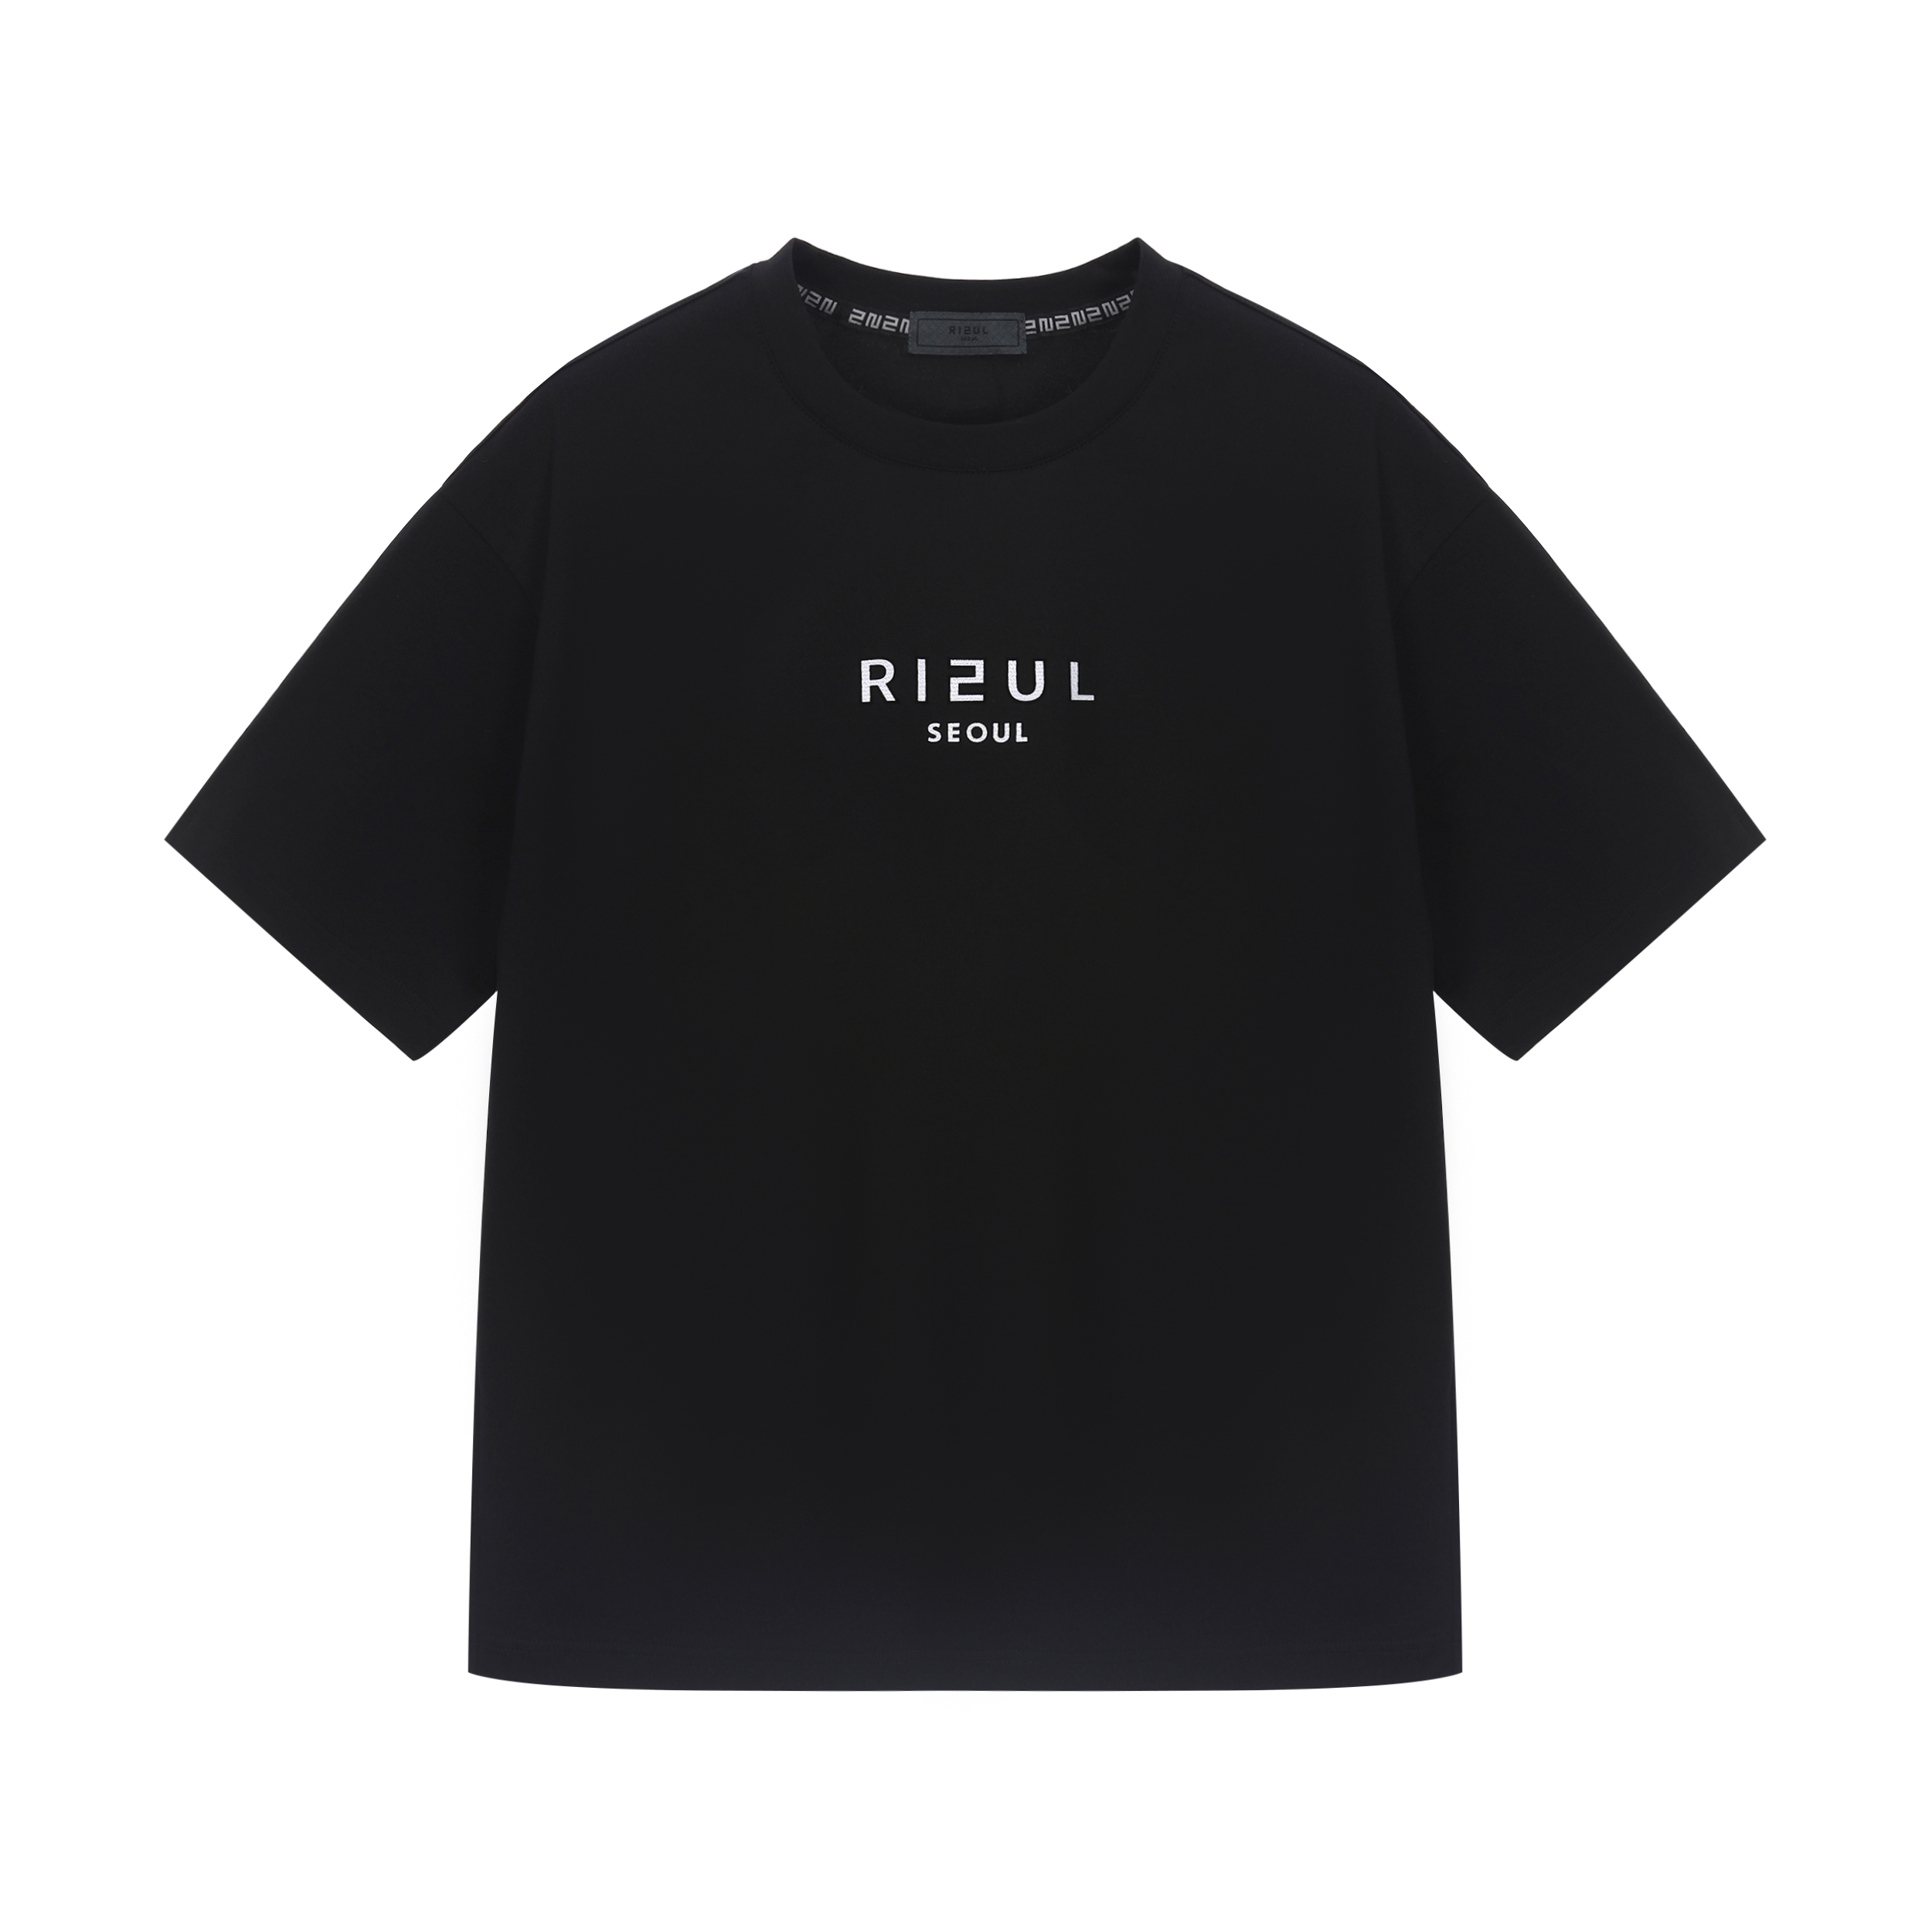 RIEUL 화이트 로고 티셔츠 블랙